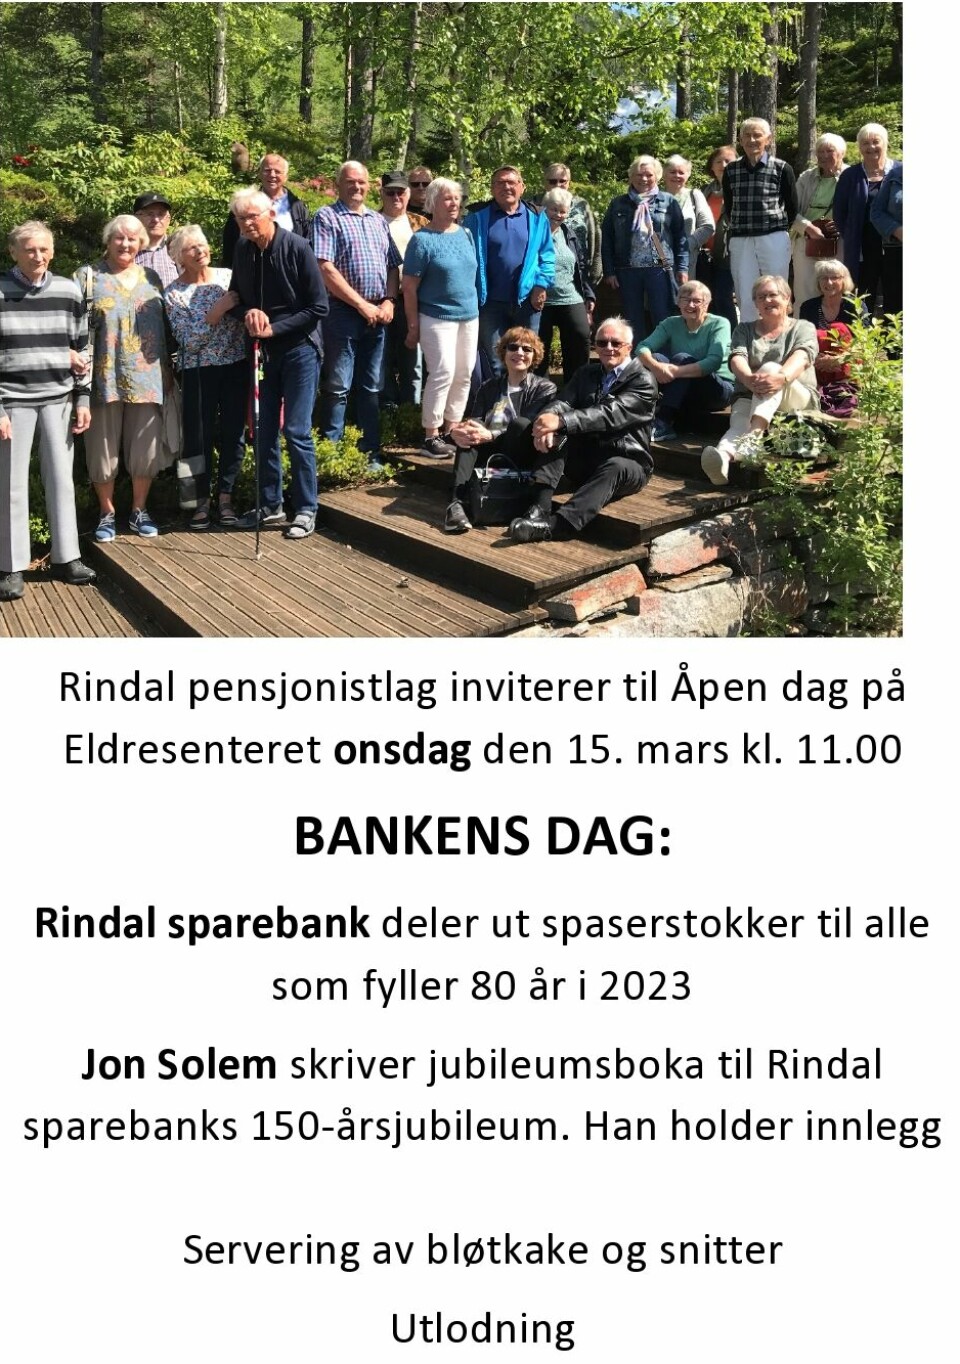 En plakat med et oppstilt bilde av mange pensjonister på tur. Plakaten har invitasjon til bankens dag i Rindal onsdag 15. mars kl 11. Rindal Sparebank skal dele ut spaserstokker til de som fyller 80 i år, og Jon Solem holder et innlegg om jubileumsboka til Rindal Sparebank.